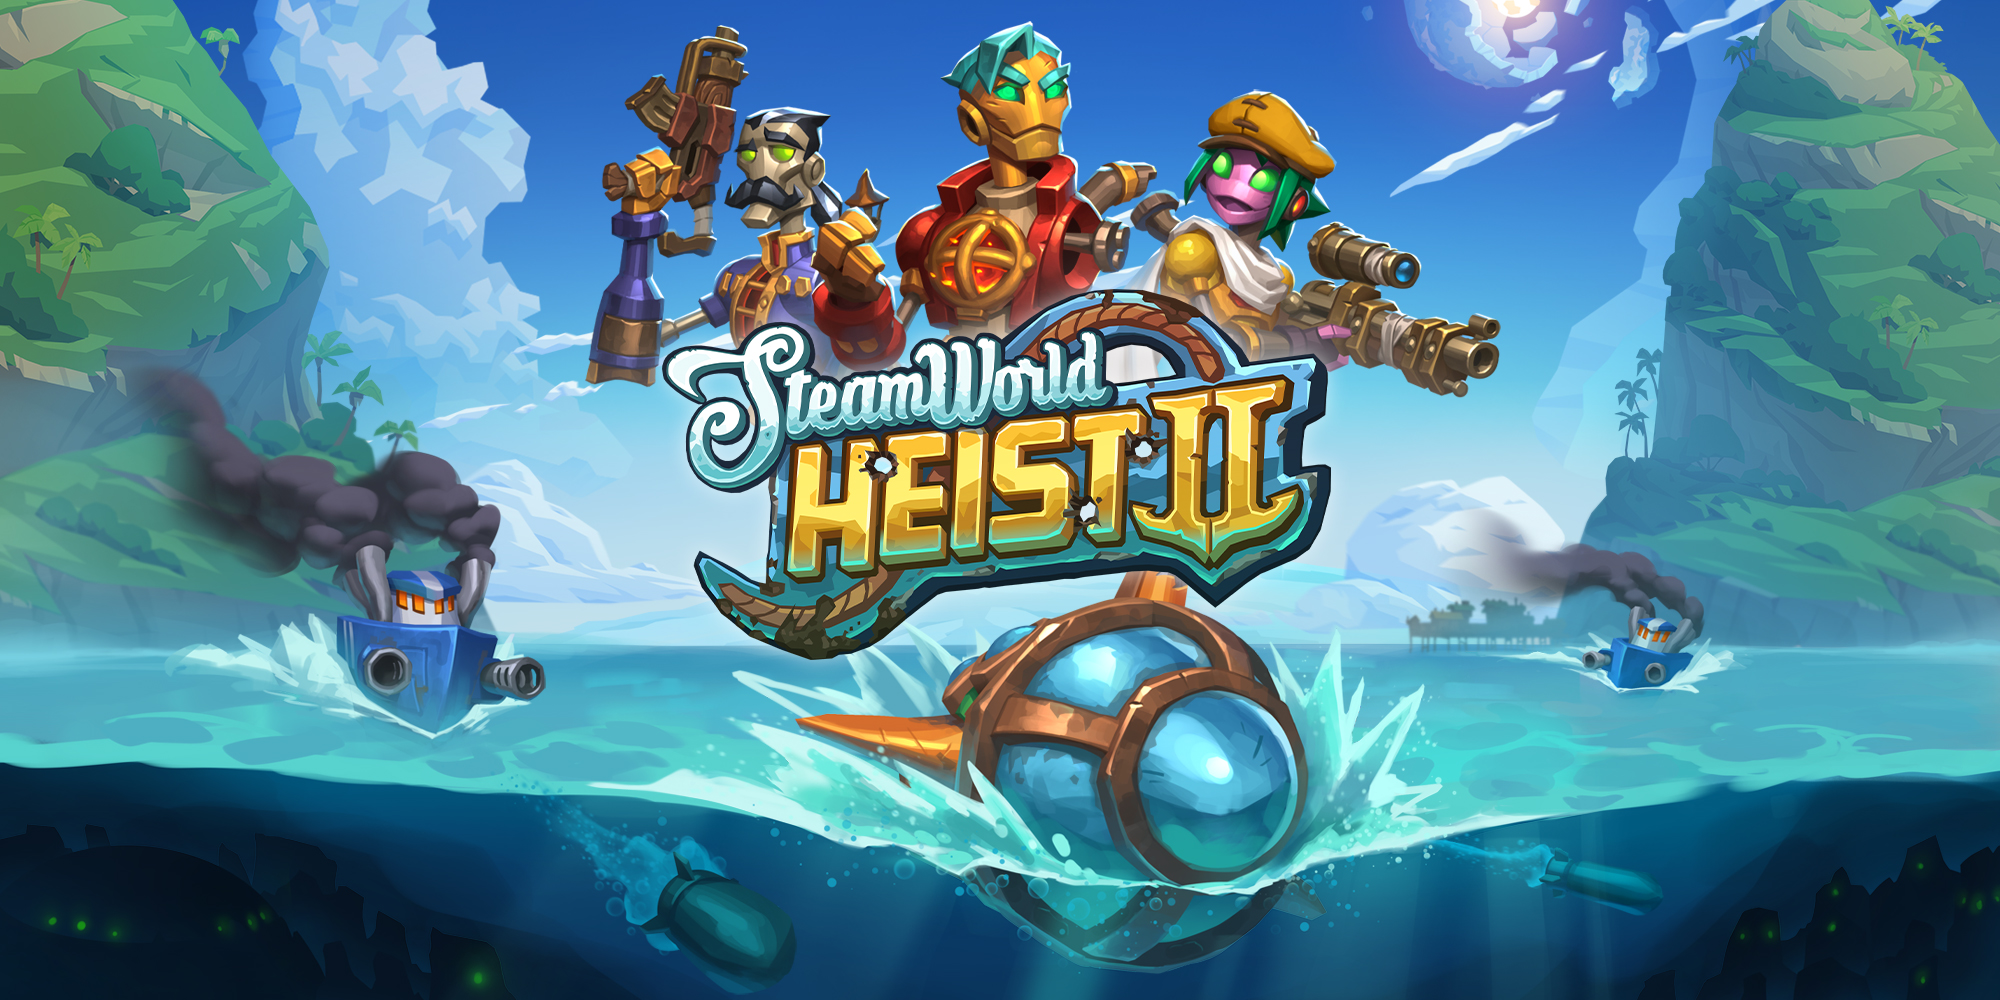 jaquette du jeu vidéo SteamWorld Heist II